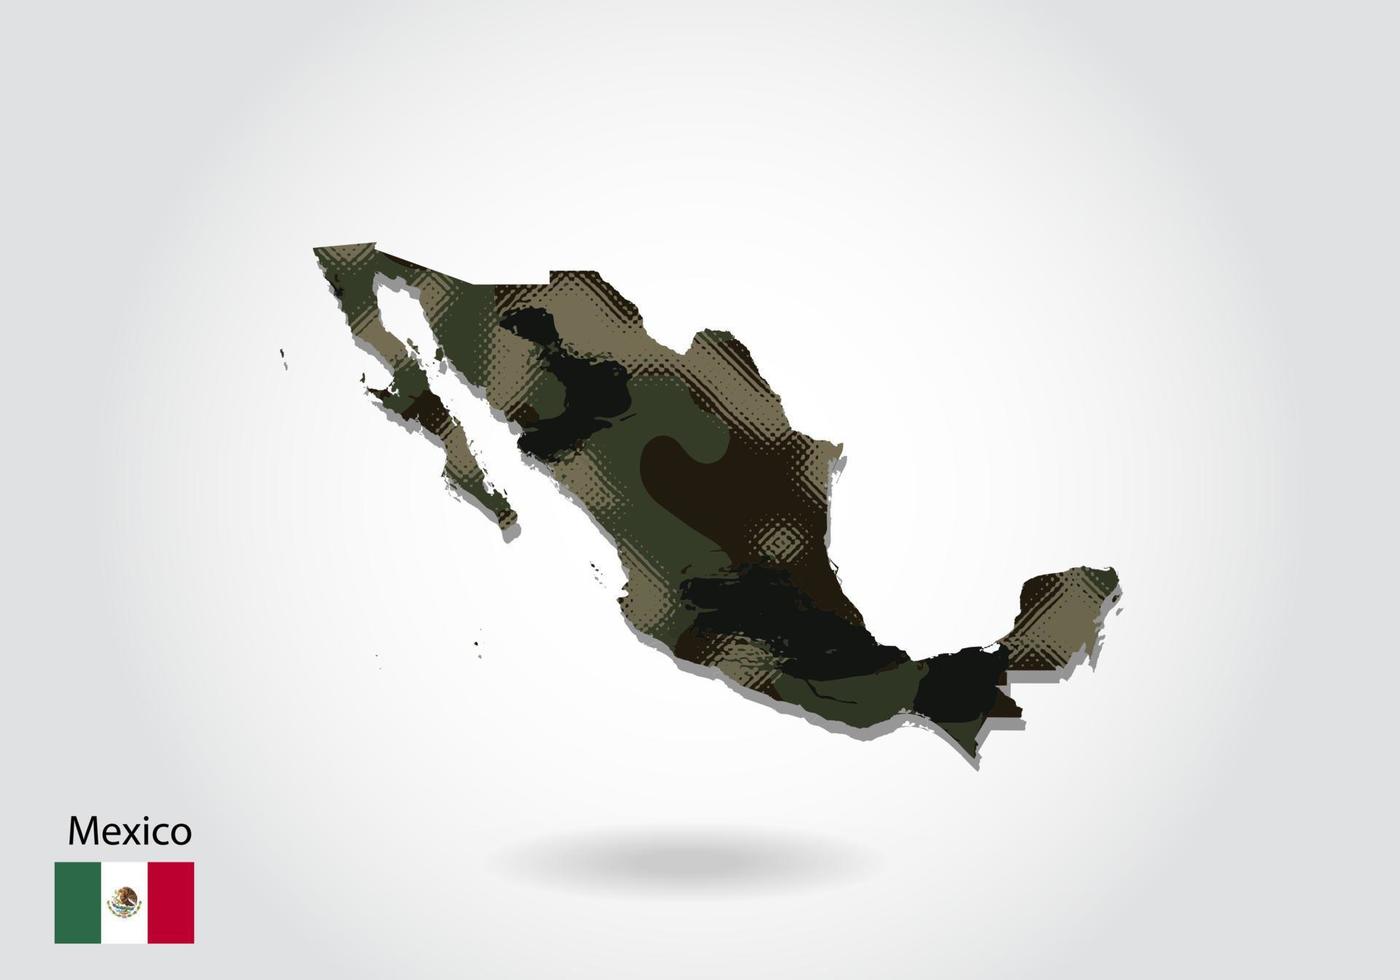 mexico-kaart met camouflagepatroon, bos - groene textuur in kaart. militair concept voor leger, soldaat en oorlog. wapenschild, vlag. vector